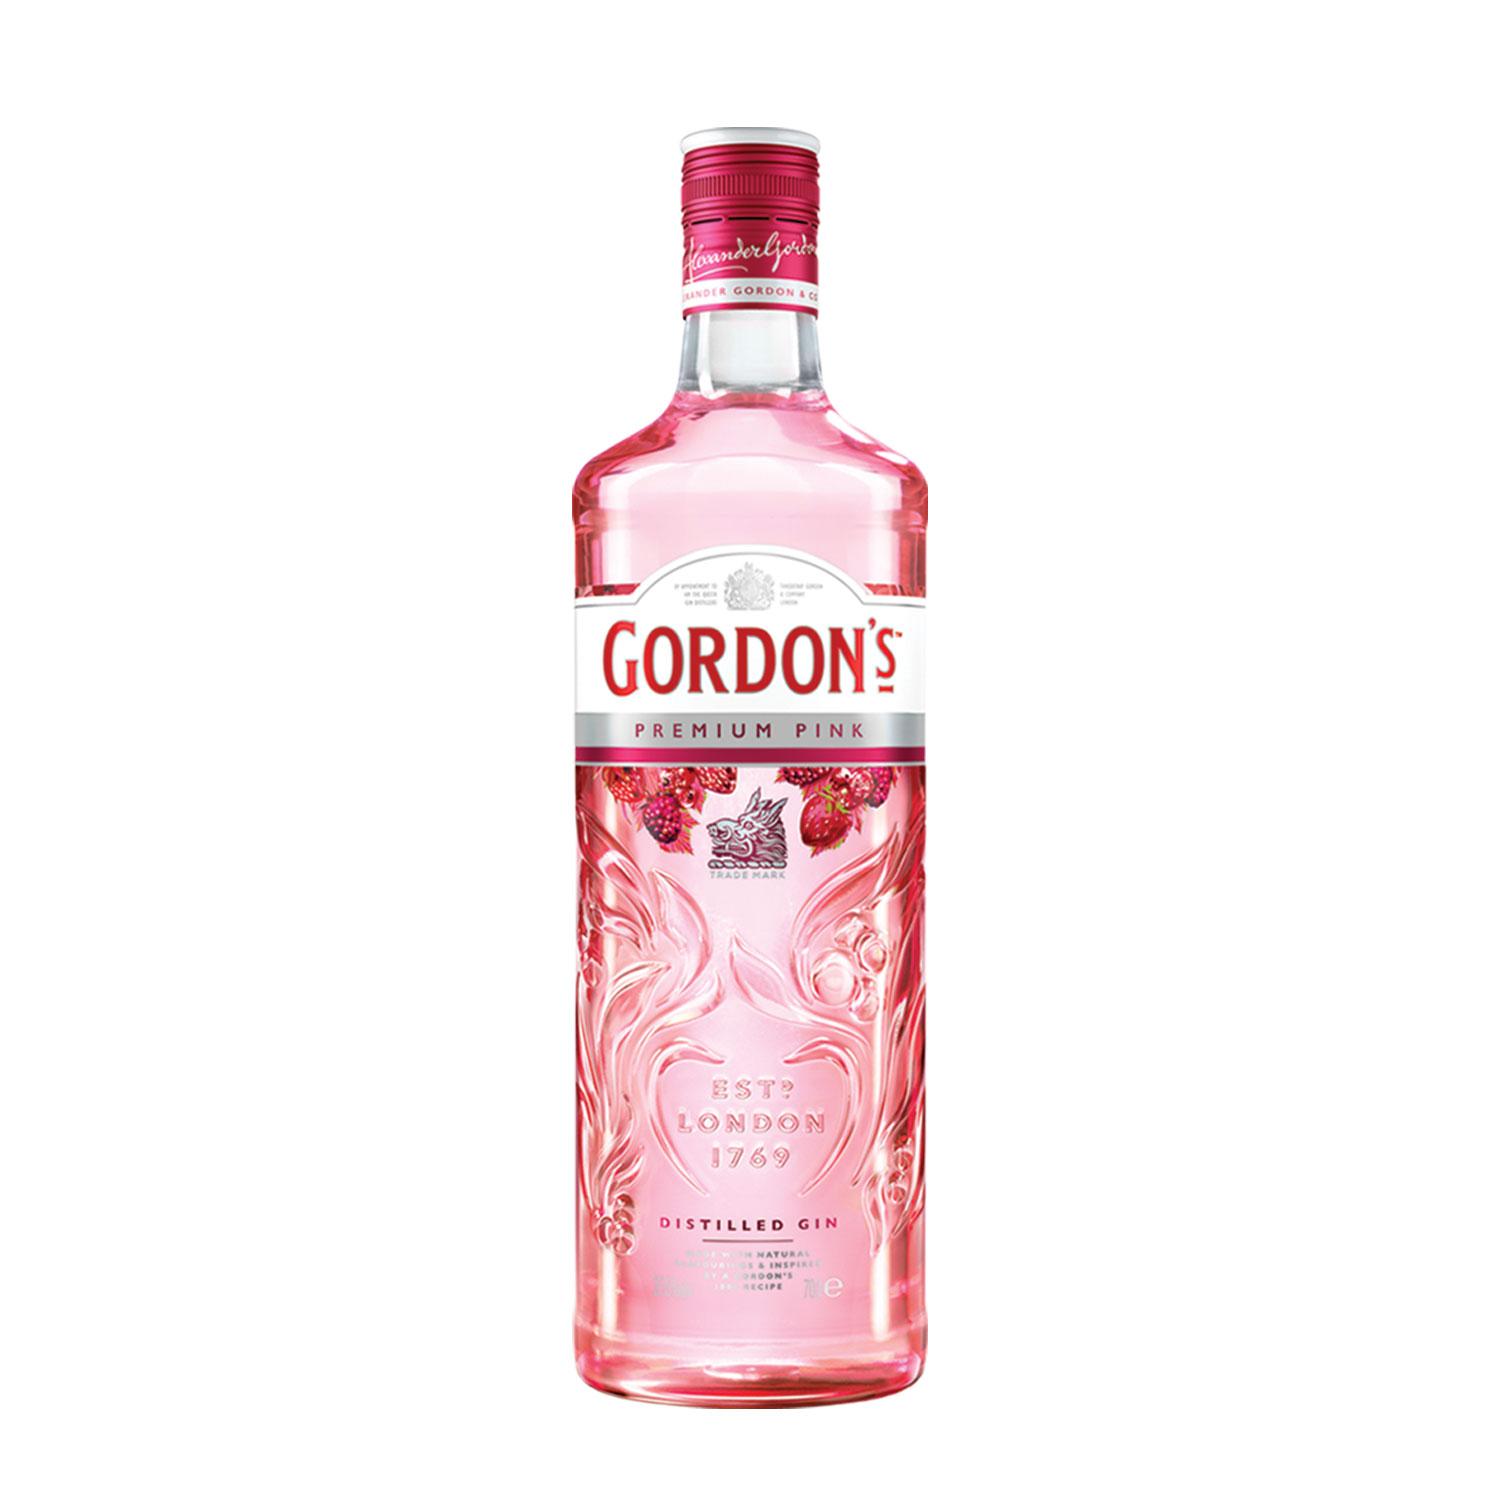 Selected image for GORDONS Premium Pink Distilled Džin, 0,7 l